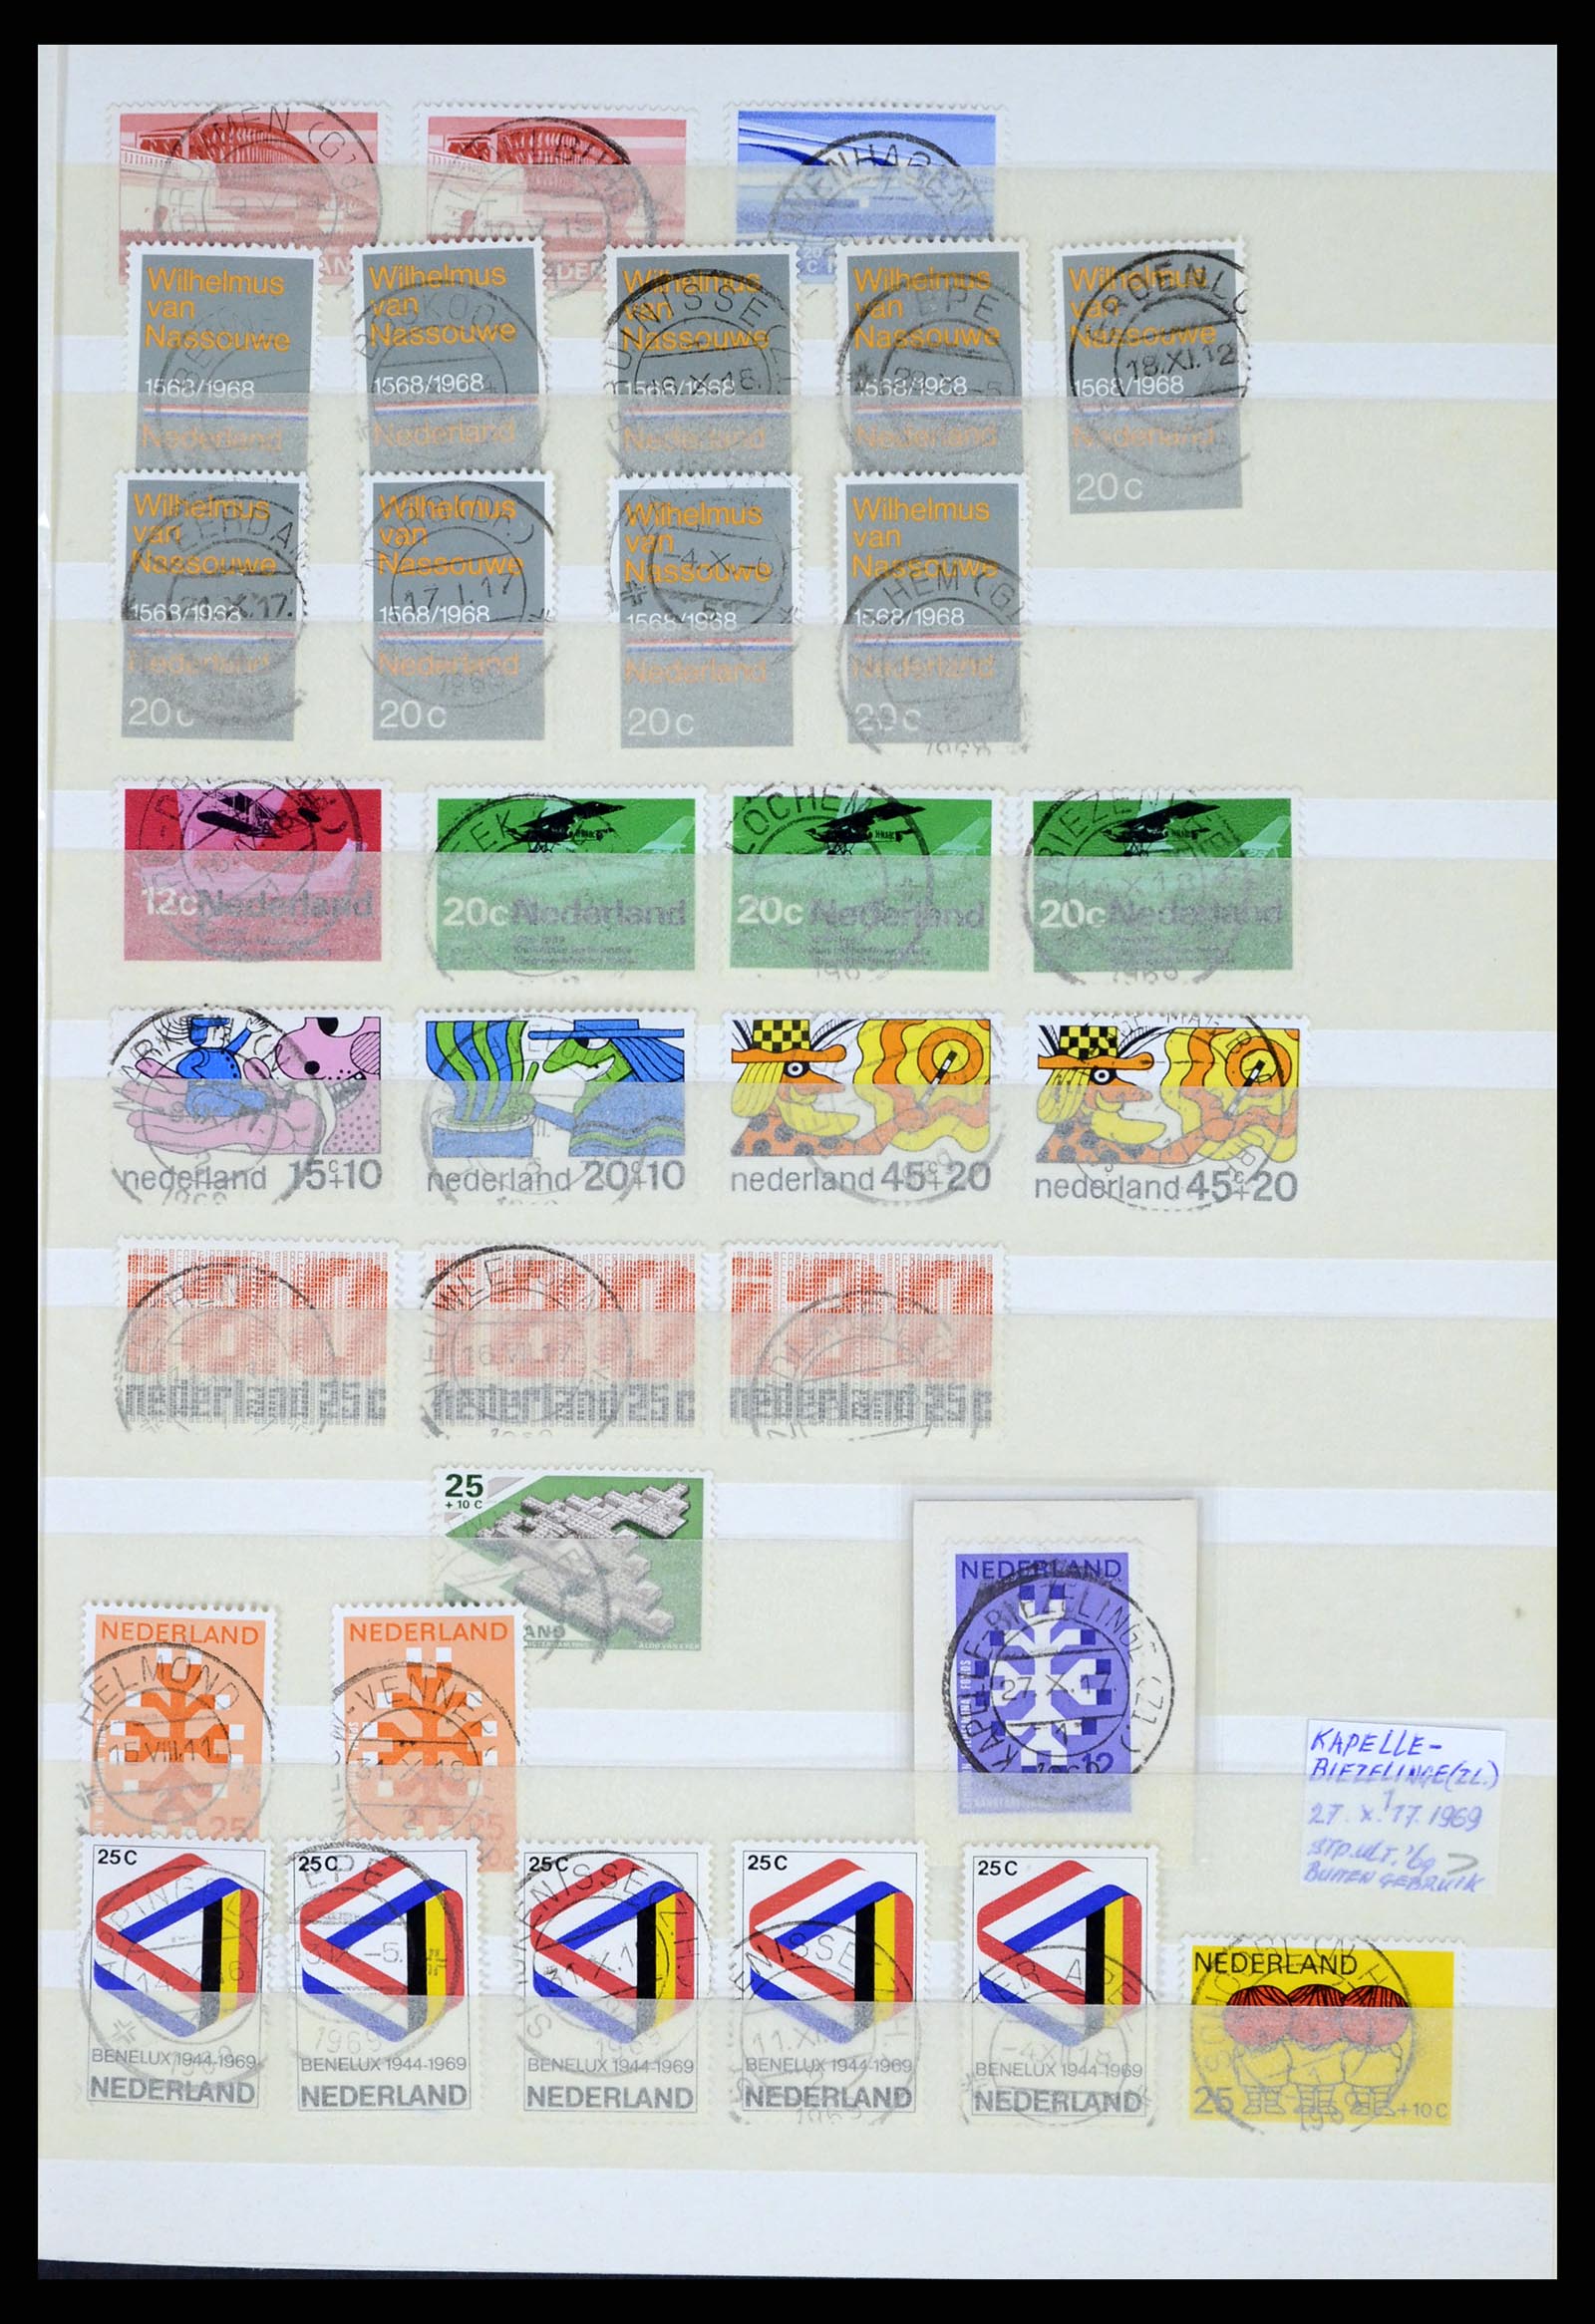 37424 061 - Postzegelverzameling 37424 Nederland kortebalk stempels.